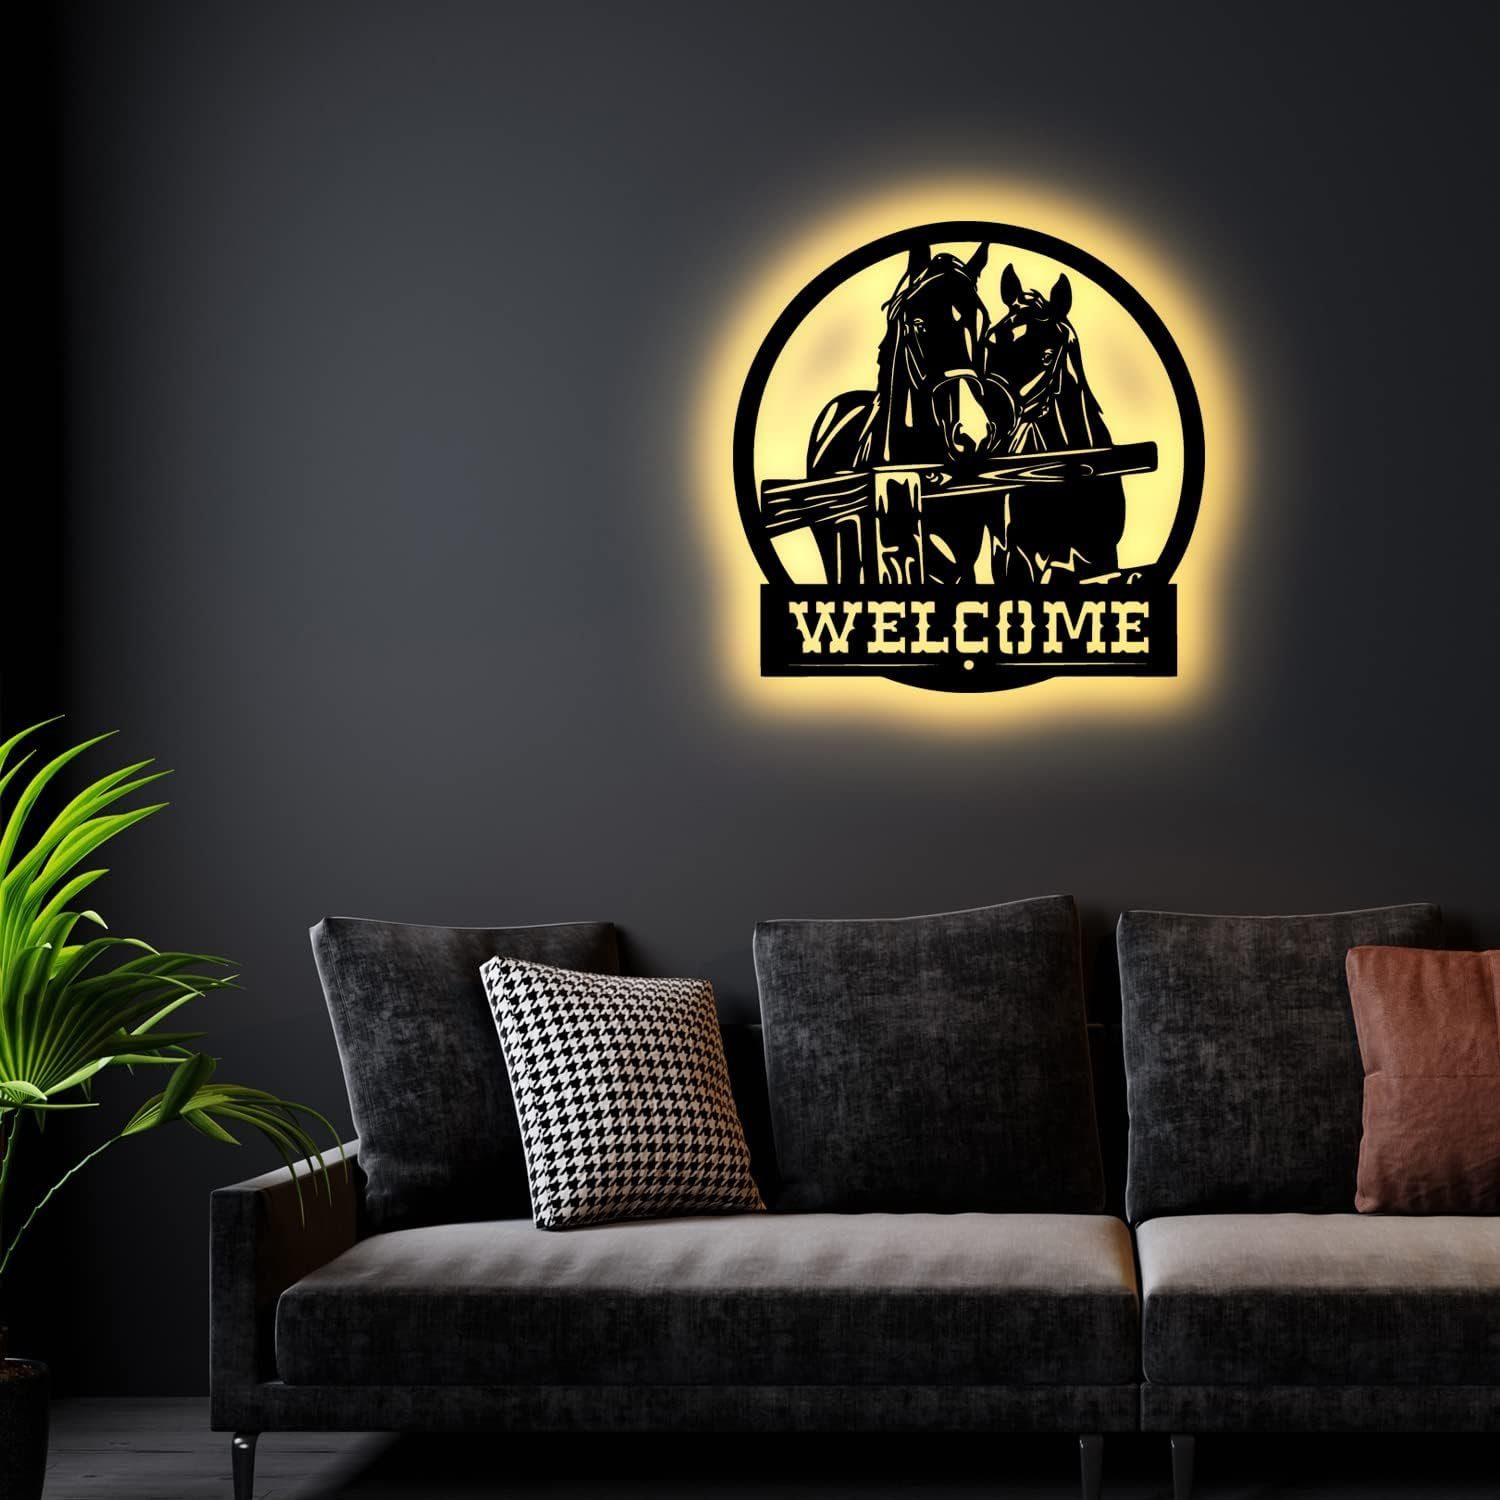 Lampen Dekofigur FOLIEN LED LEON integriert in Welcome fest Geschenk Pferd LED Pferde Wandlampe Buche LED #1,